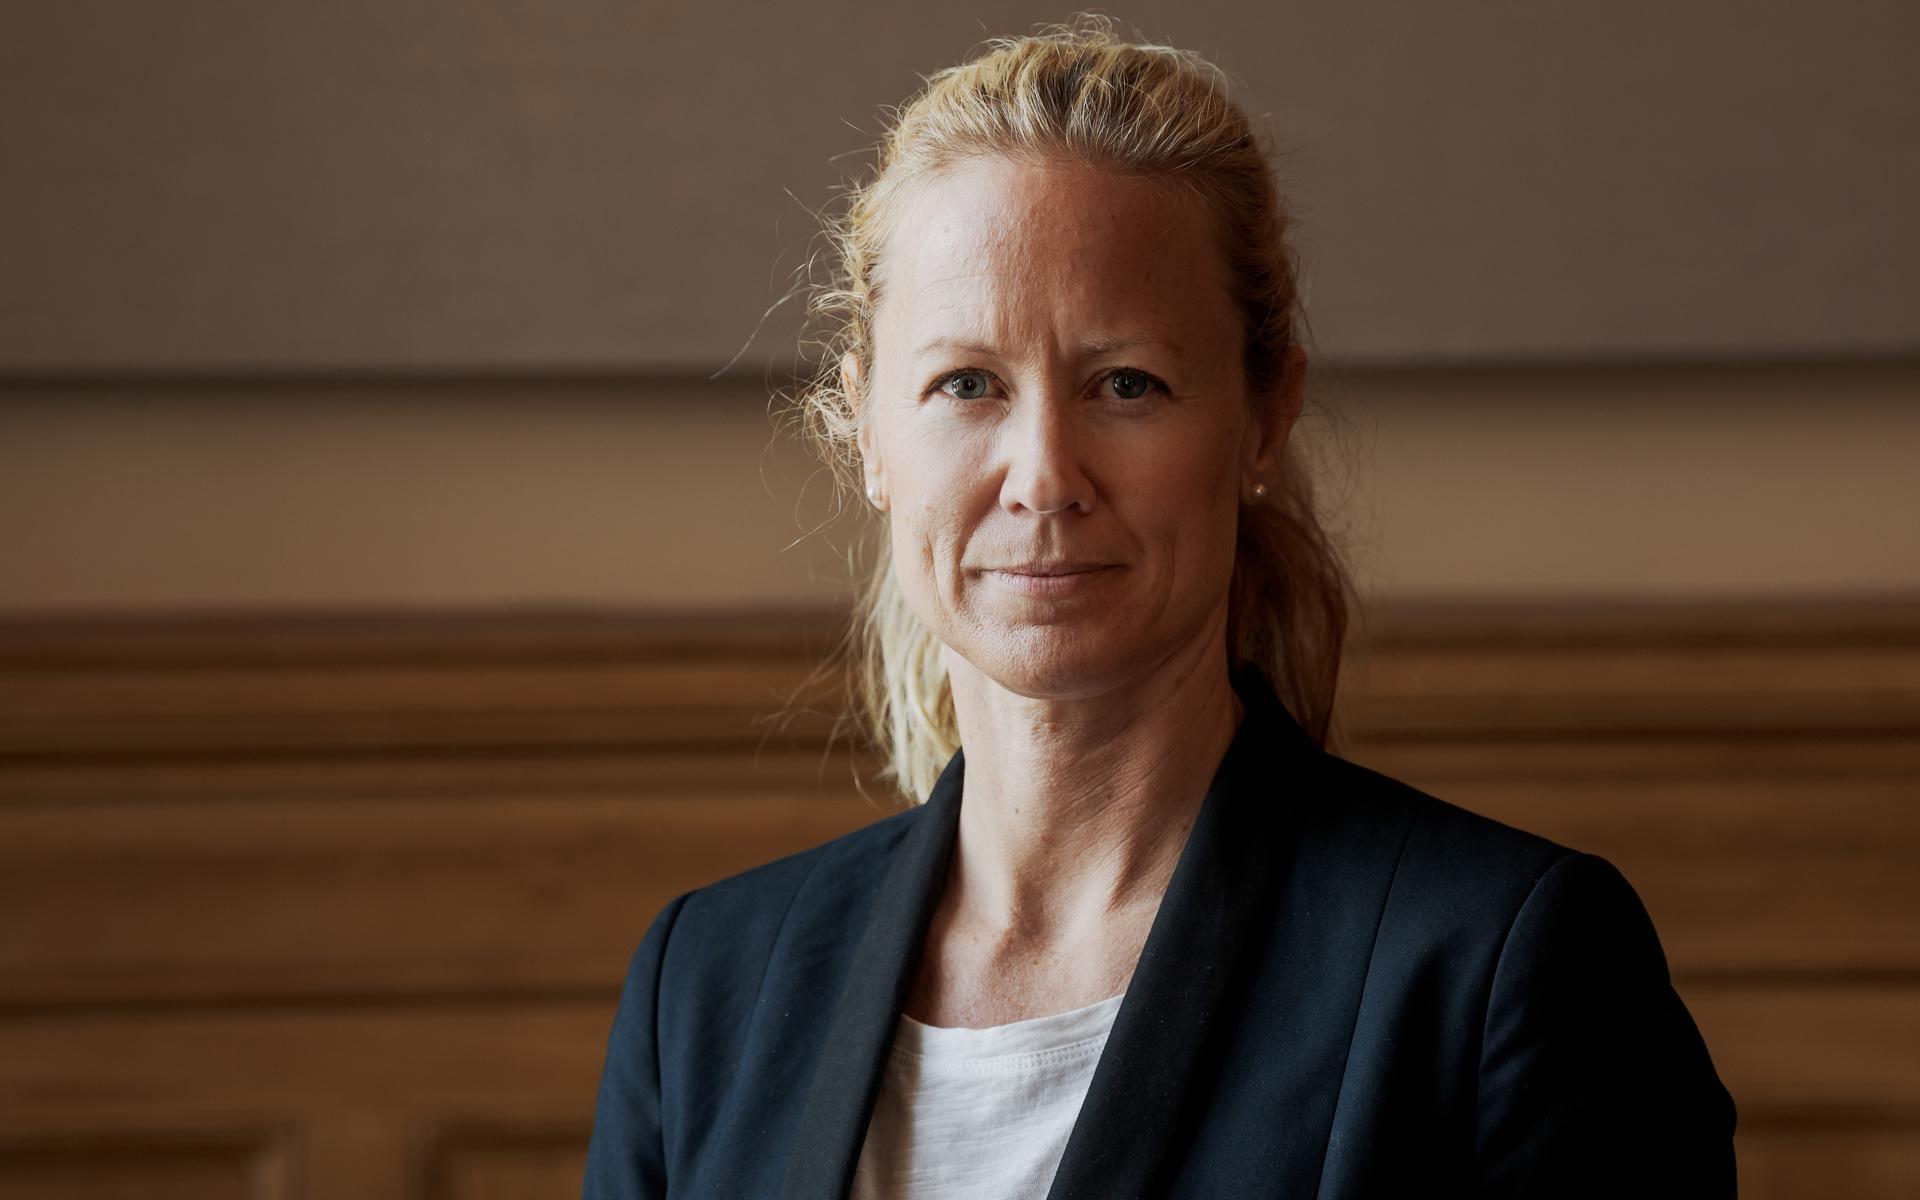 Västra Götalandsregionens vaccinationssamordnare Kristine Rygge uppmanar alla som rekommenderas att ta påfyllnadsdosen för att stärka skyddet mot covid-19.